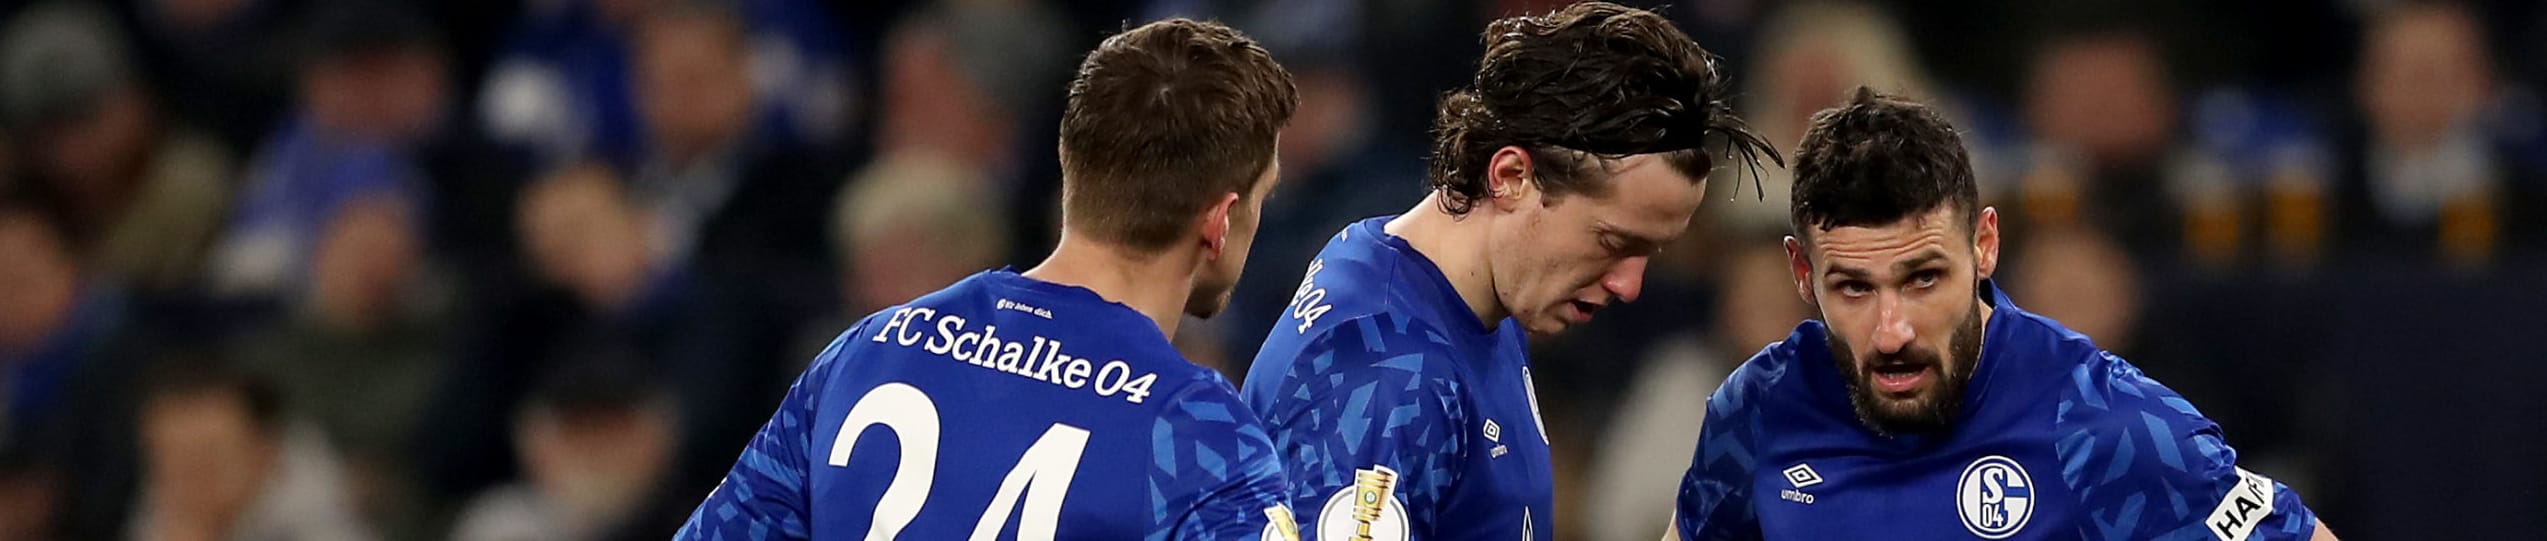 Quote Schalke 04-Augsburg: chi interromperà il digiuno di vittorie?